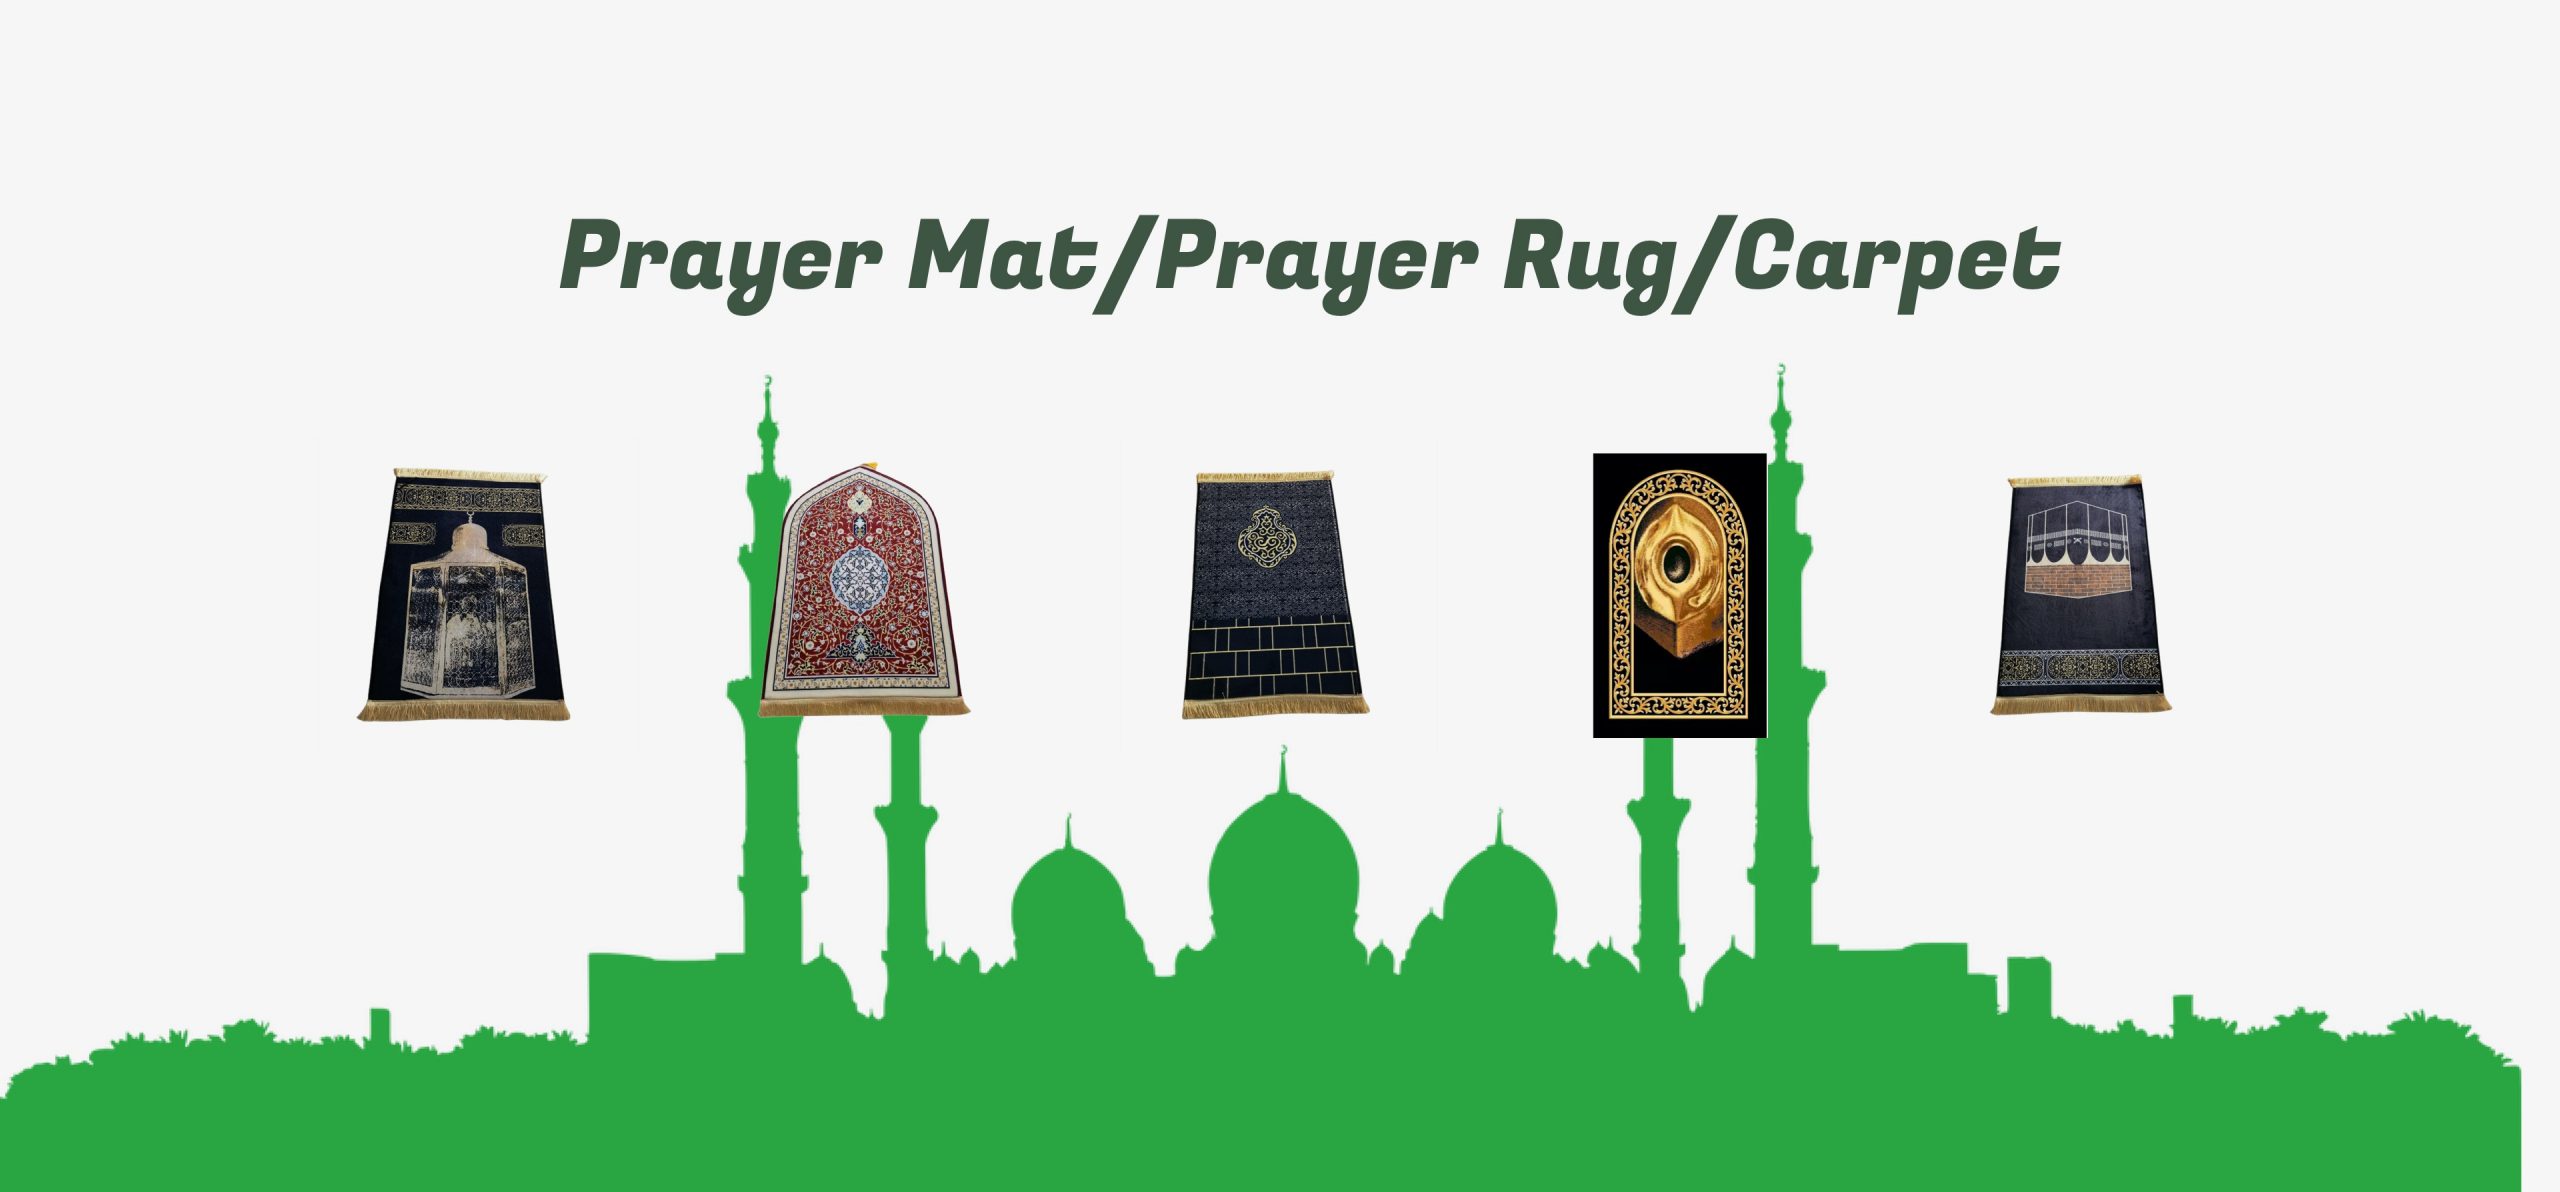 Prayer Mats